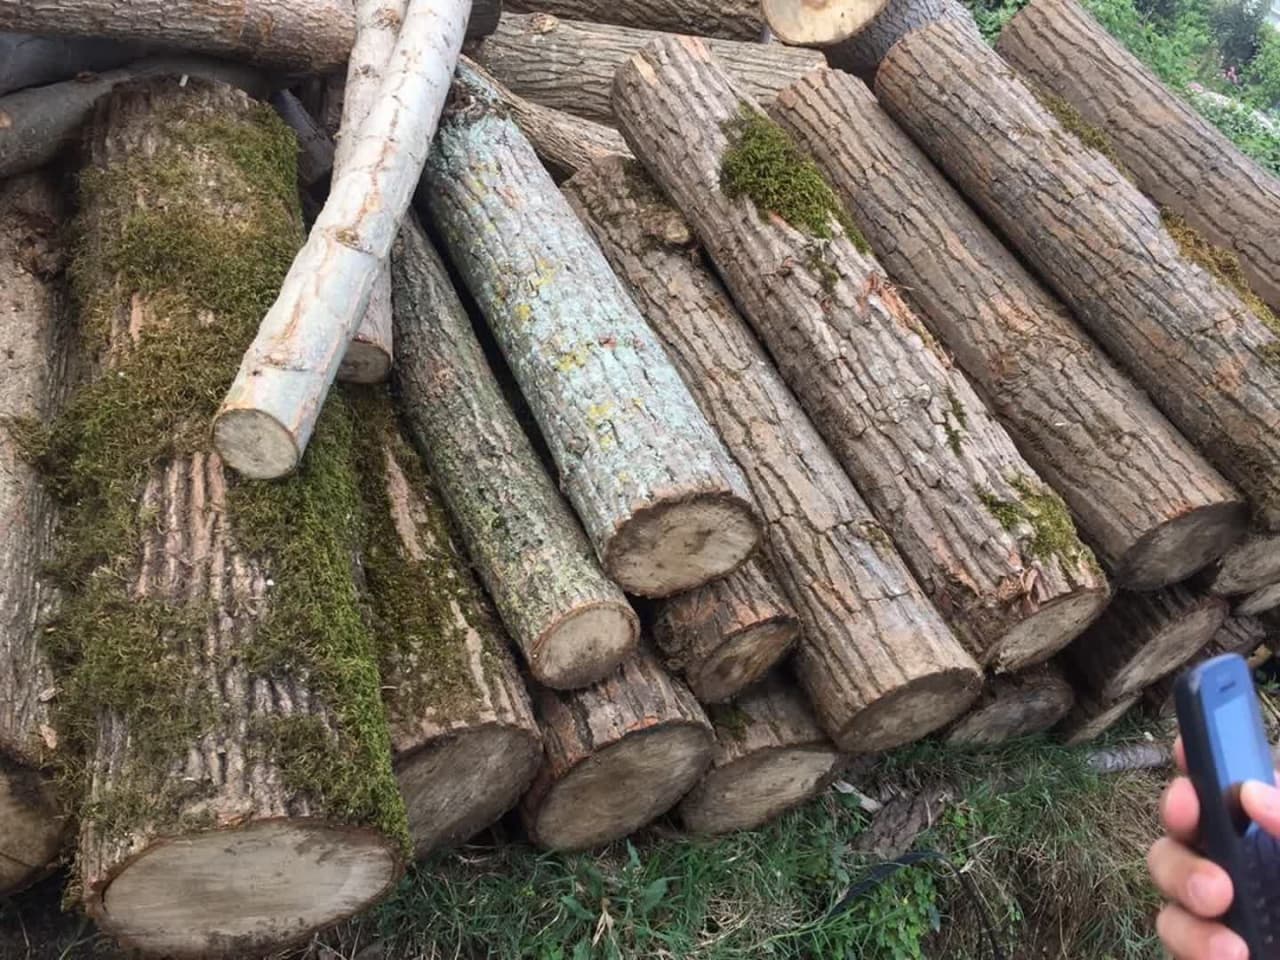 ۵ تن چوب جنگلی قاچاق در ماسال کشف شد